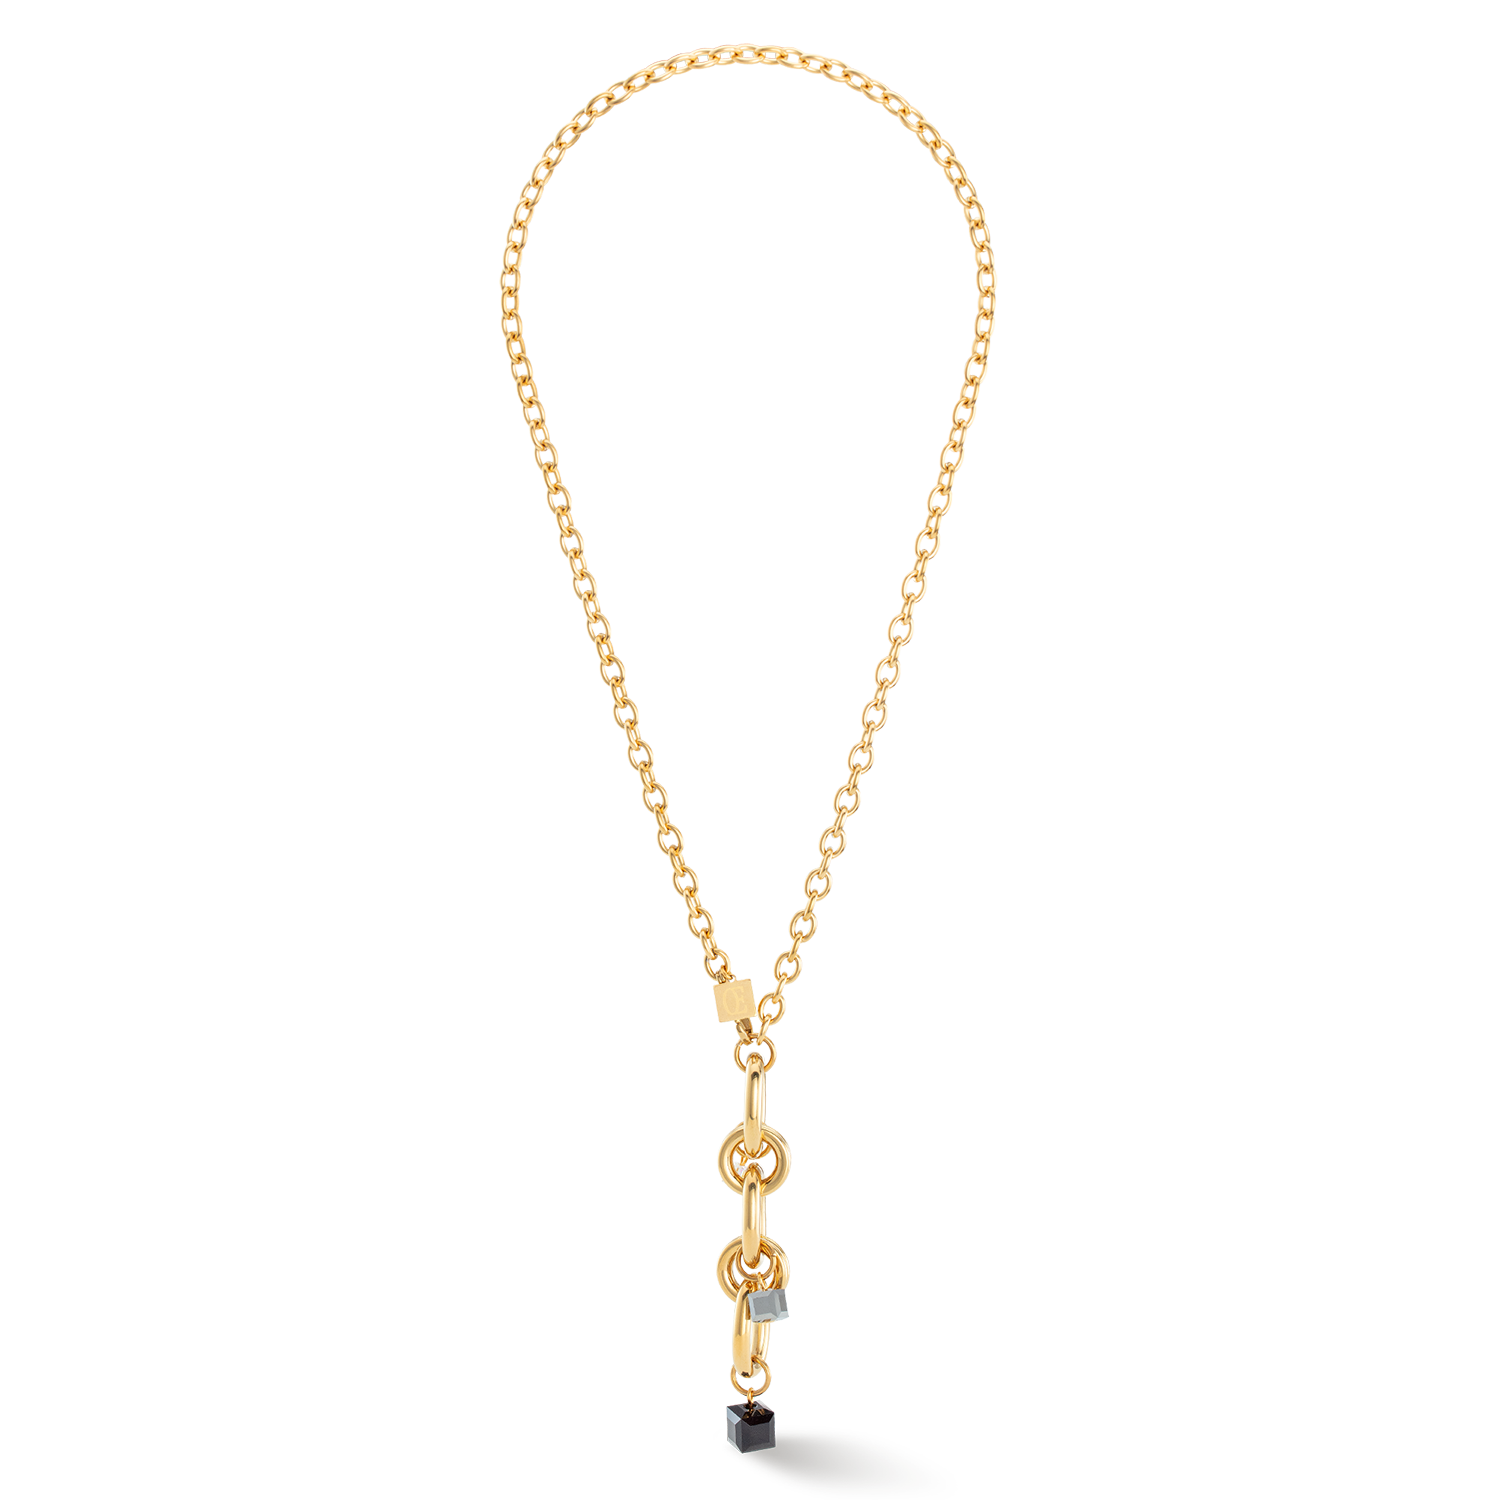 Halskette Chunky Chain gold-schwarz